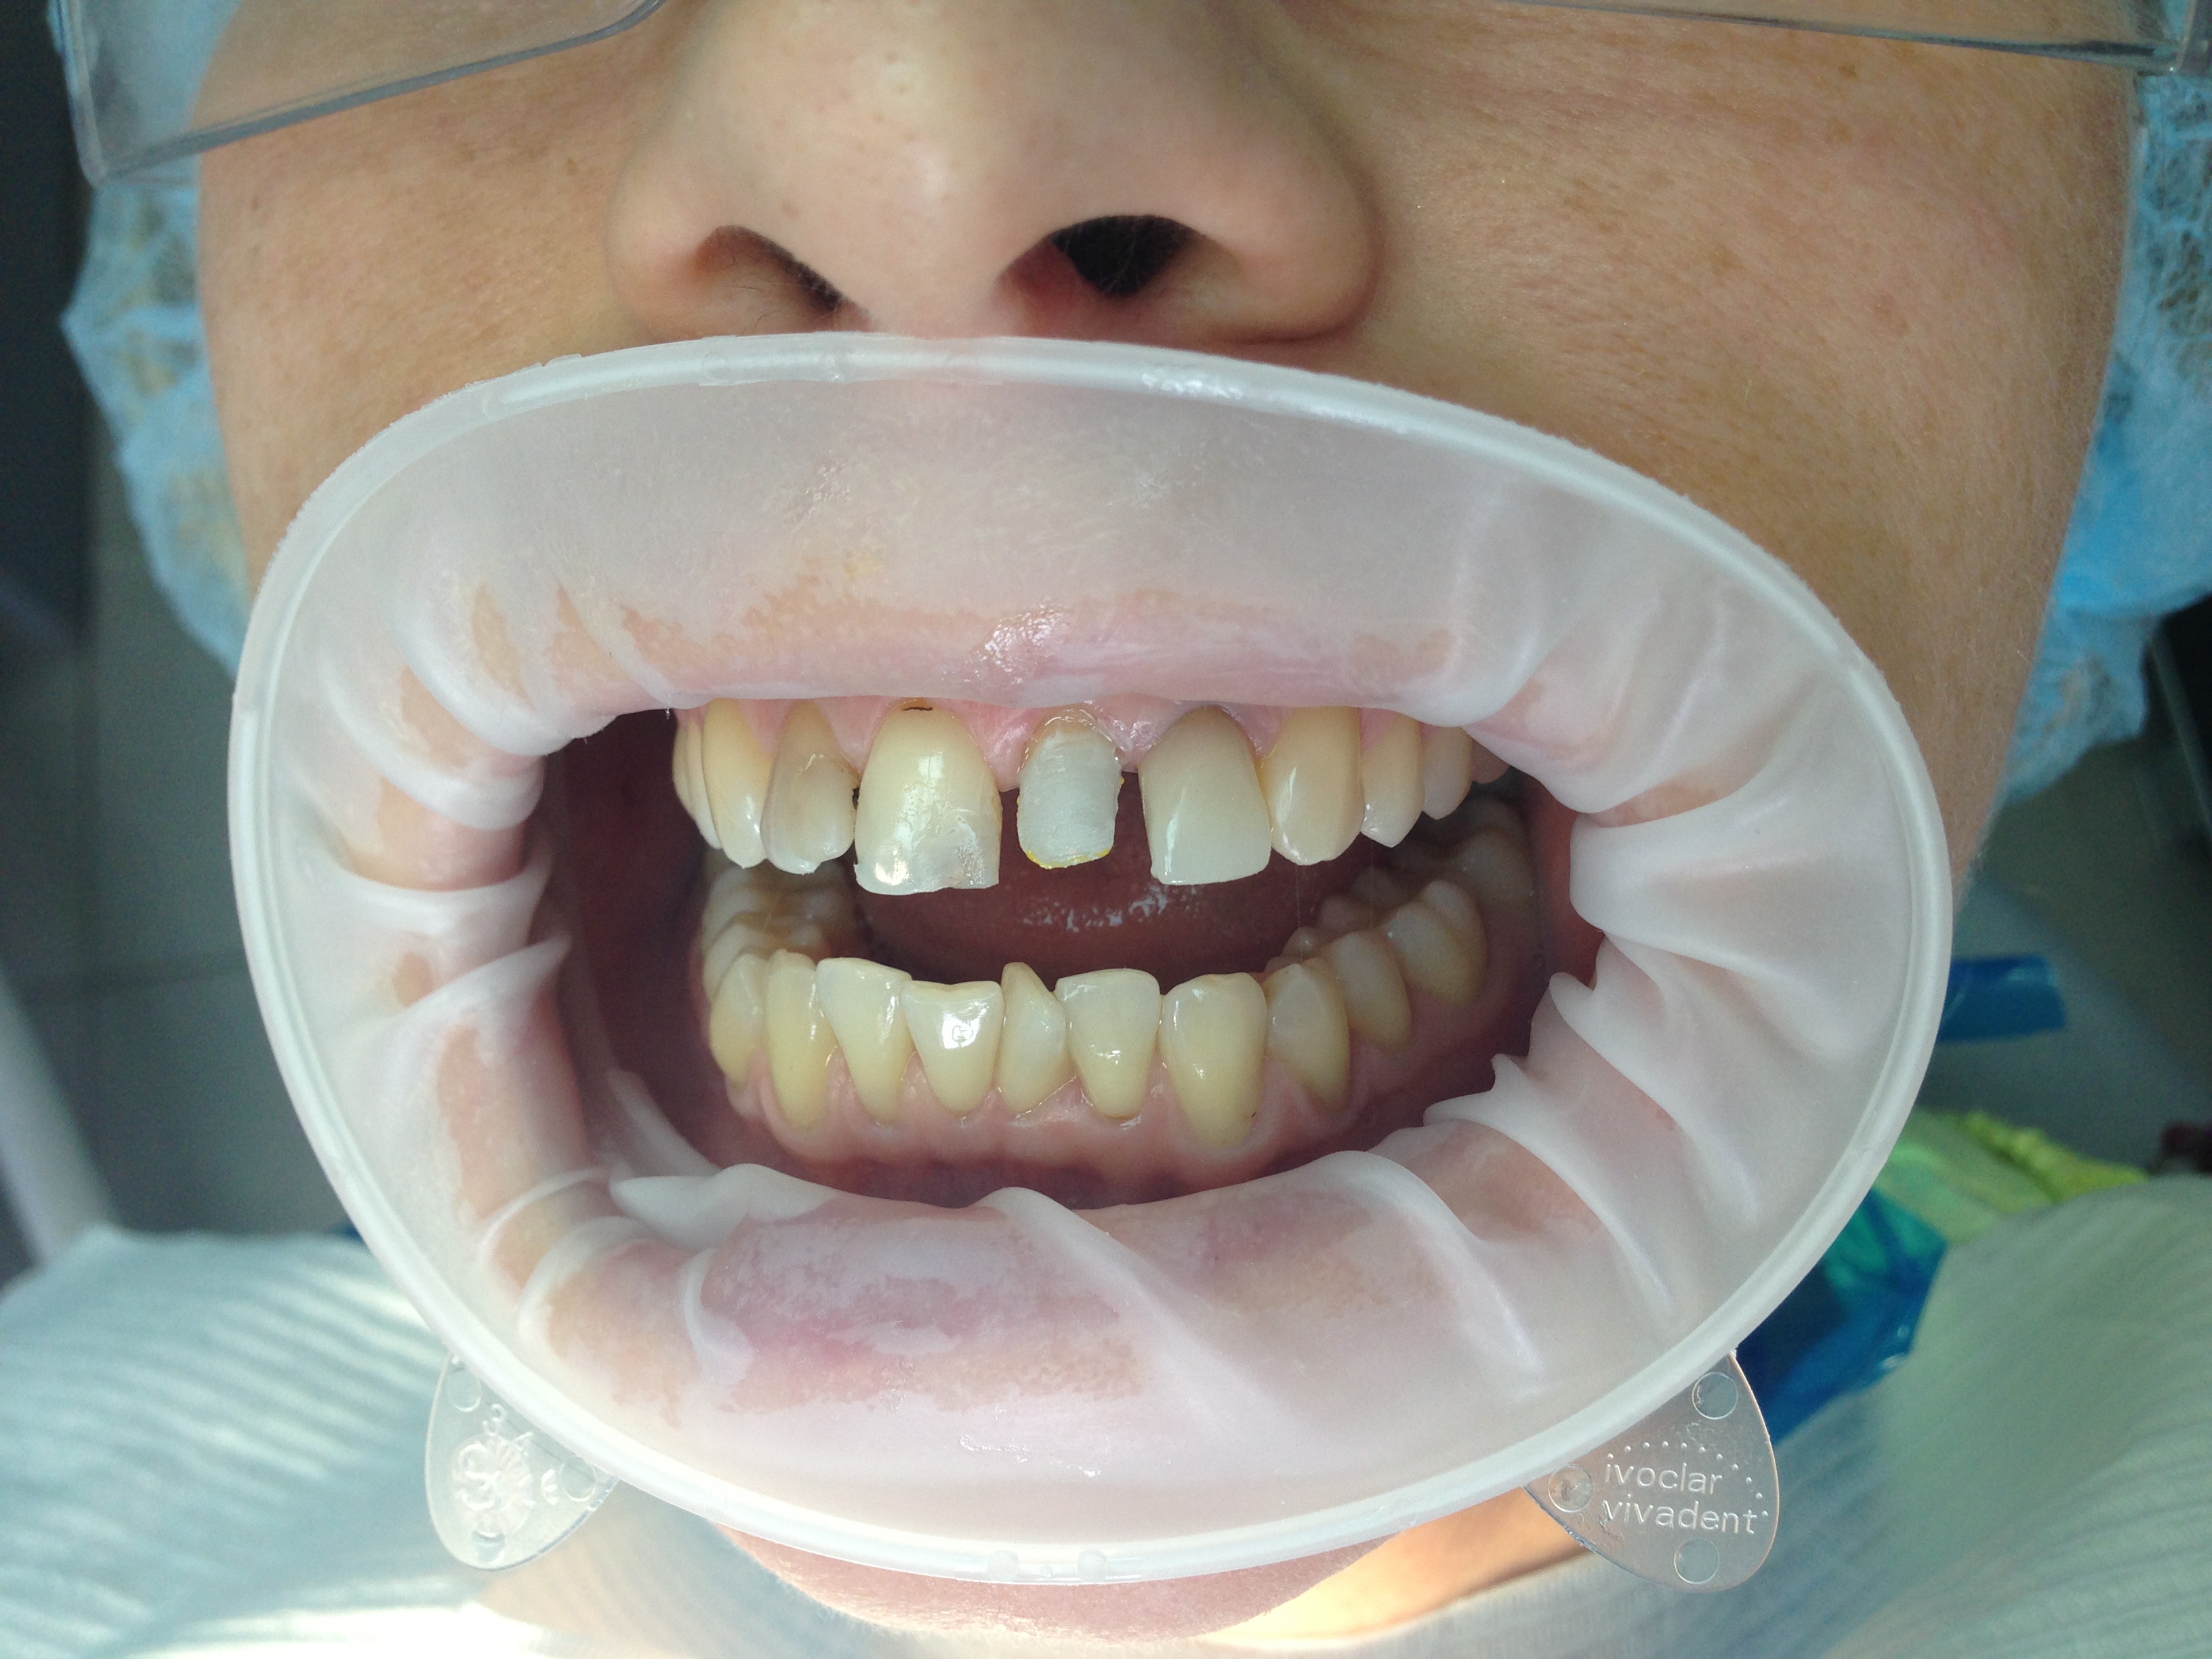 Пациент К-Восстановили 21 зуб материалом Максцем элит и стекловолоконным штифтом икадент (отличная альтернатива безметалловой вкладке)